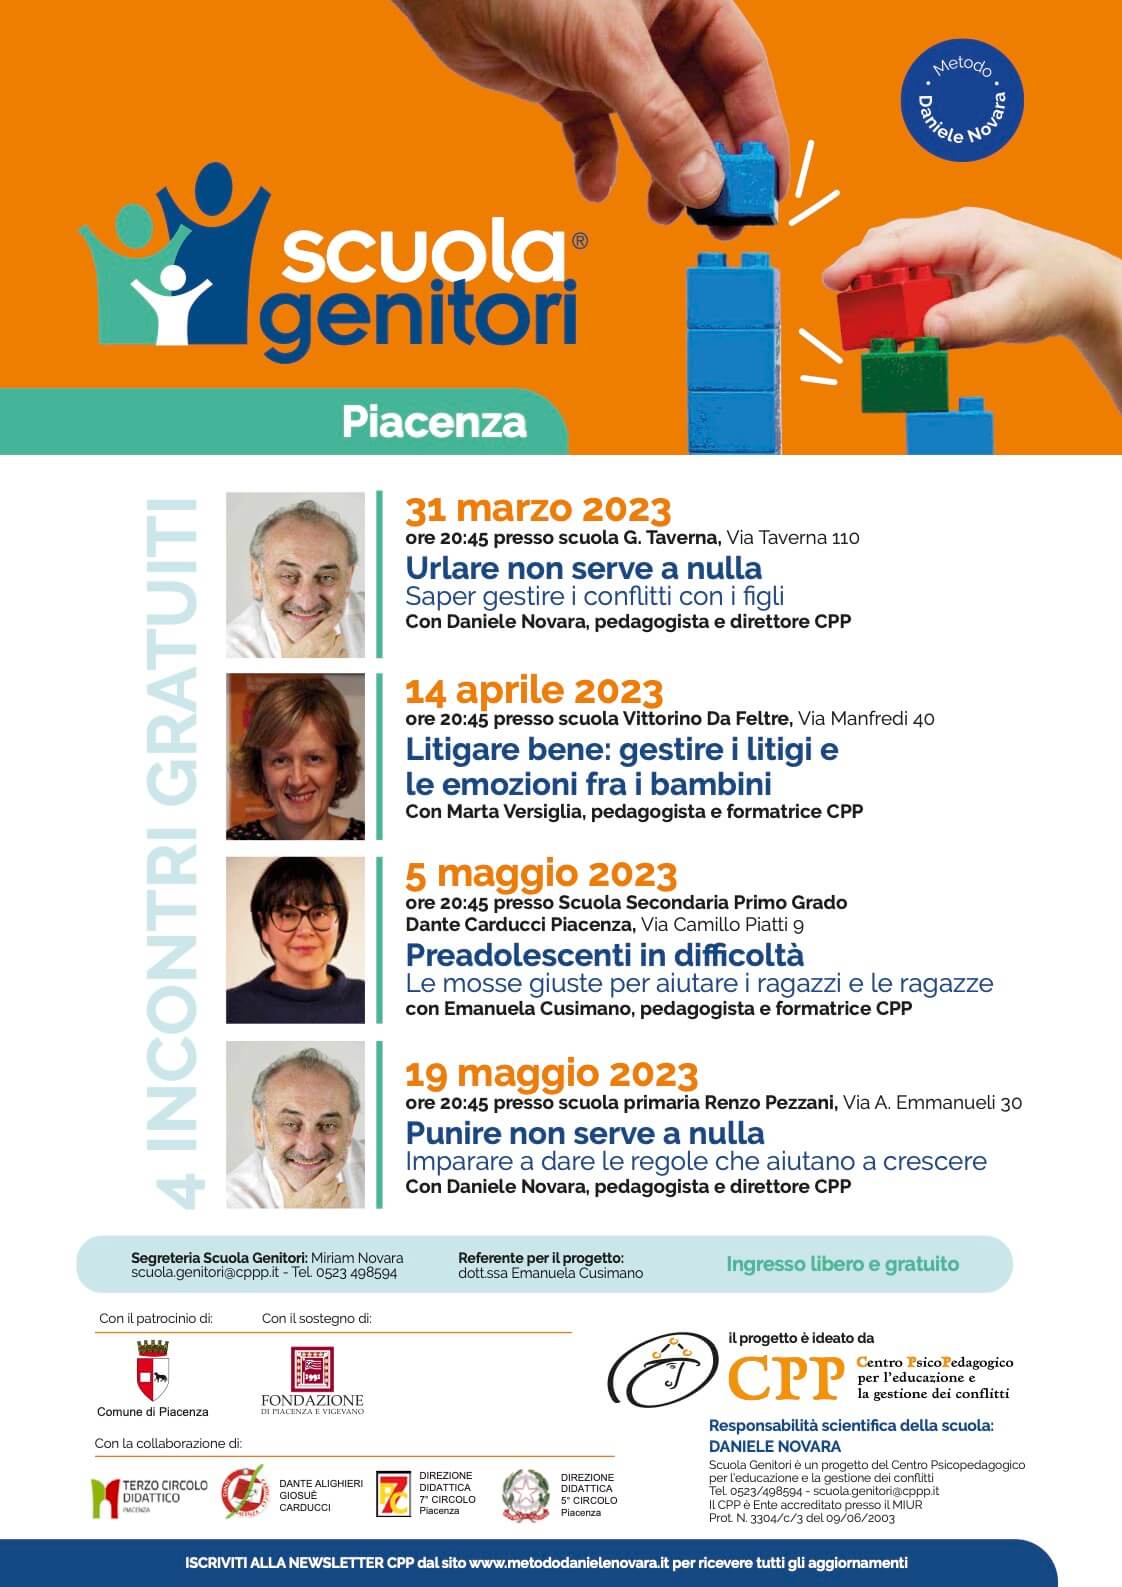 Locandina della Scuola Genitori di Piacenza edizione 2023 con Daniele Novara, Marta Versiglia e Emanuela Cusimano